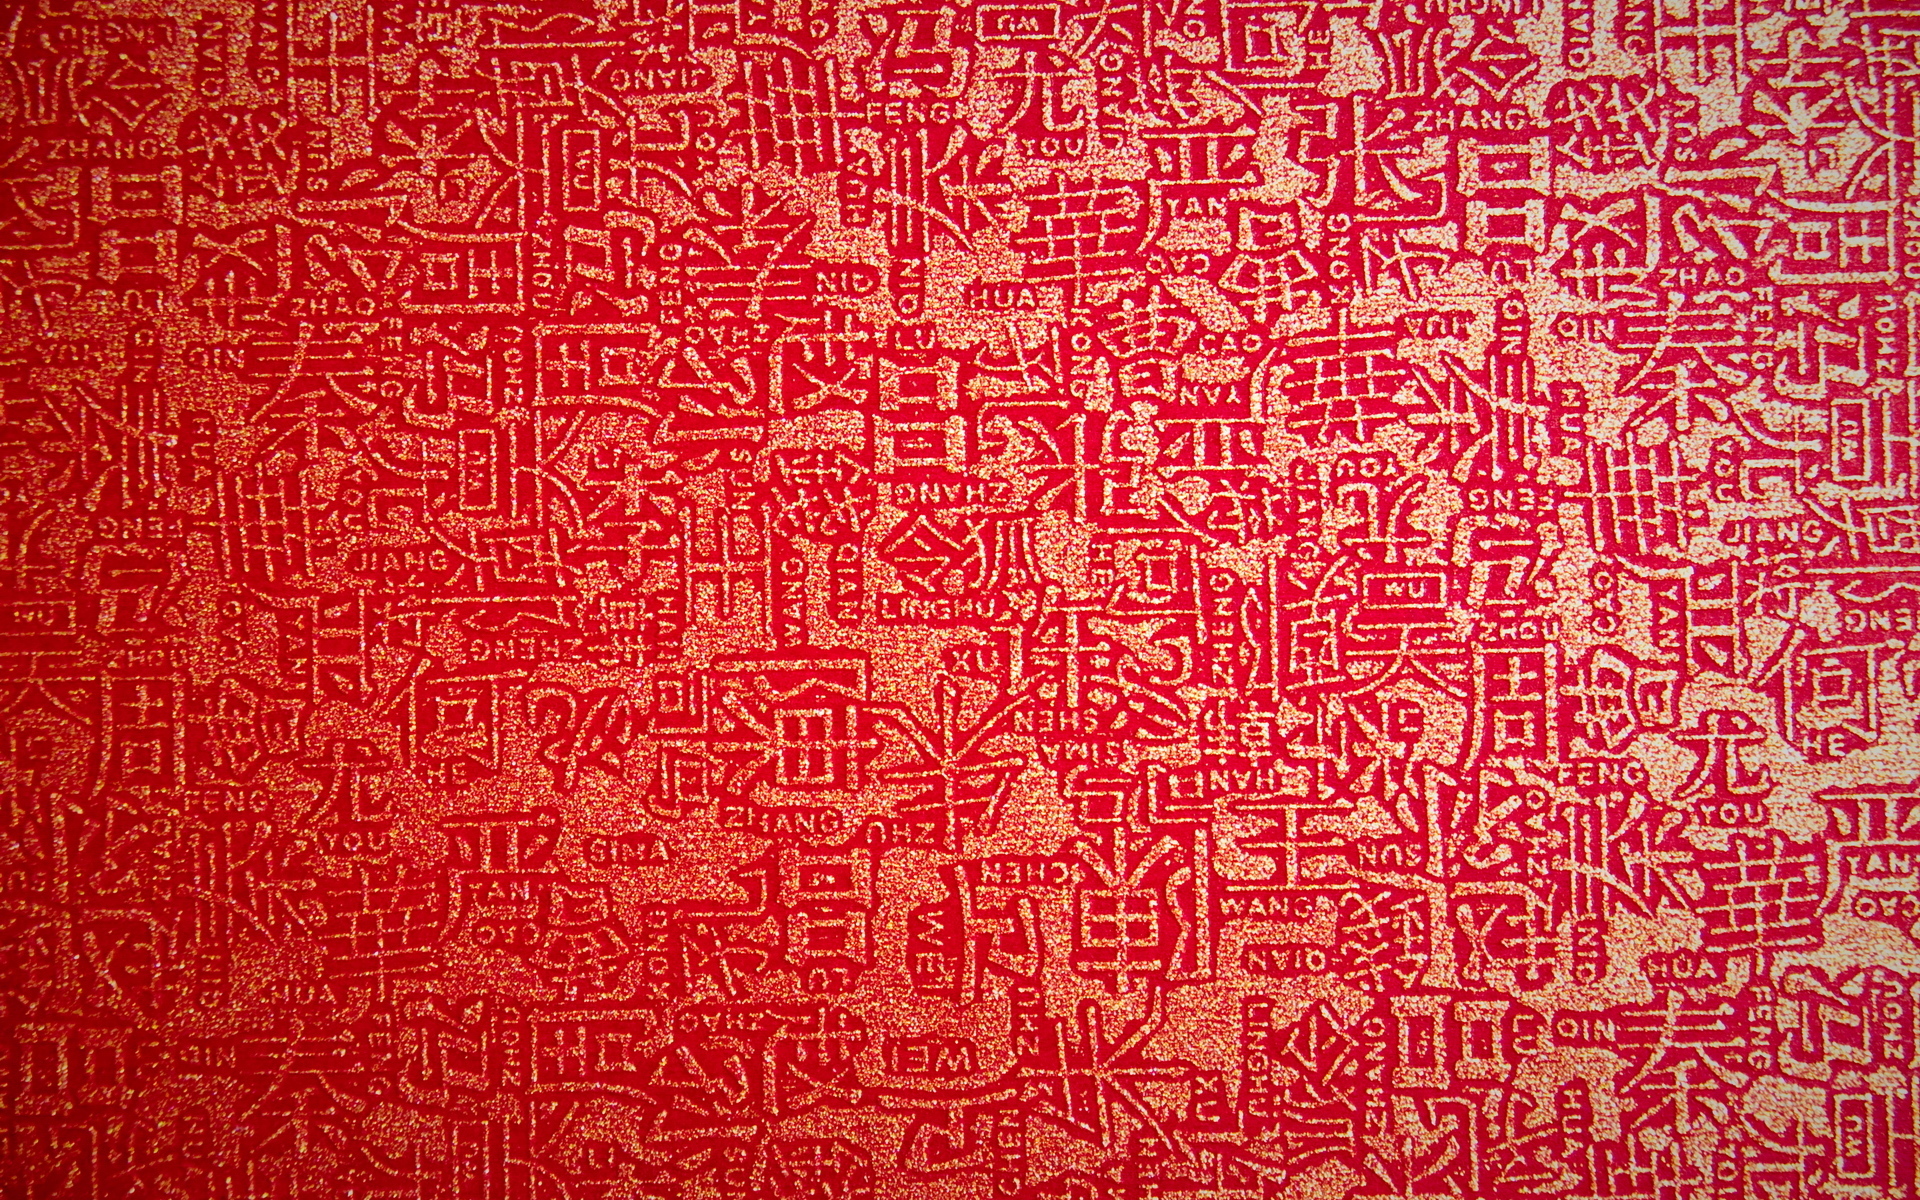 Oriental Computer Wallpapers, Desktop Backgrounds | 1920x1200 | ID:157301